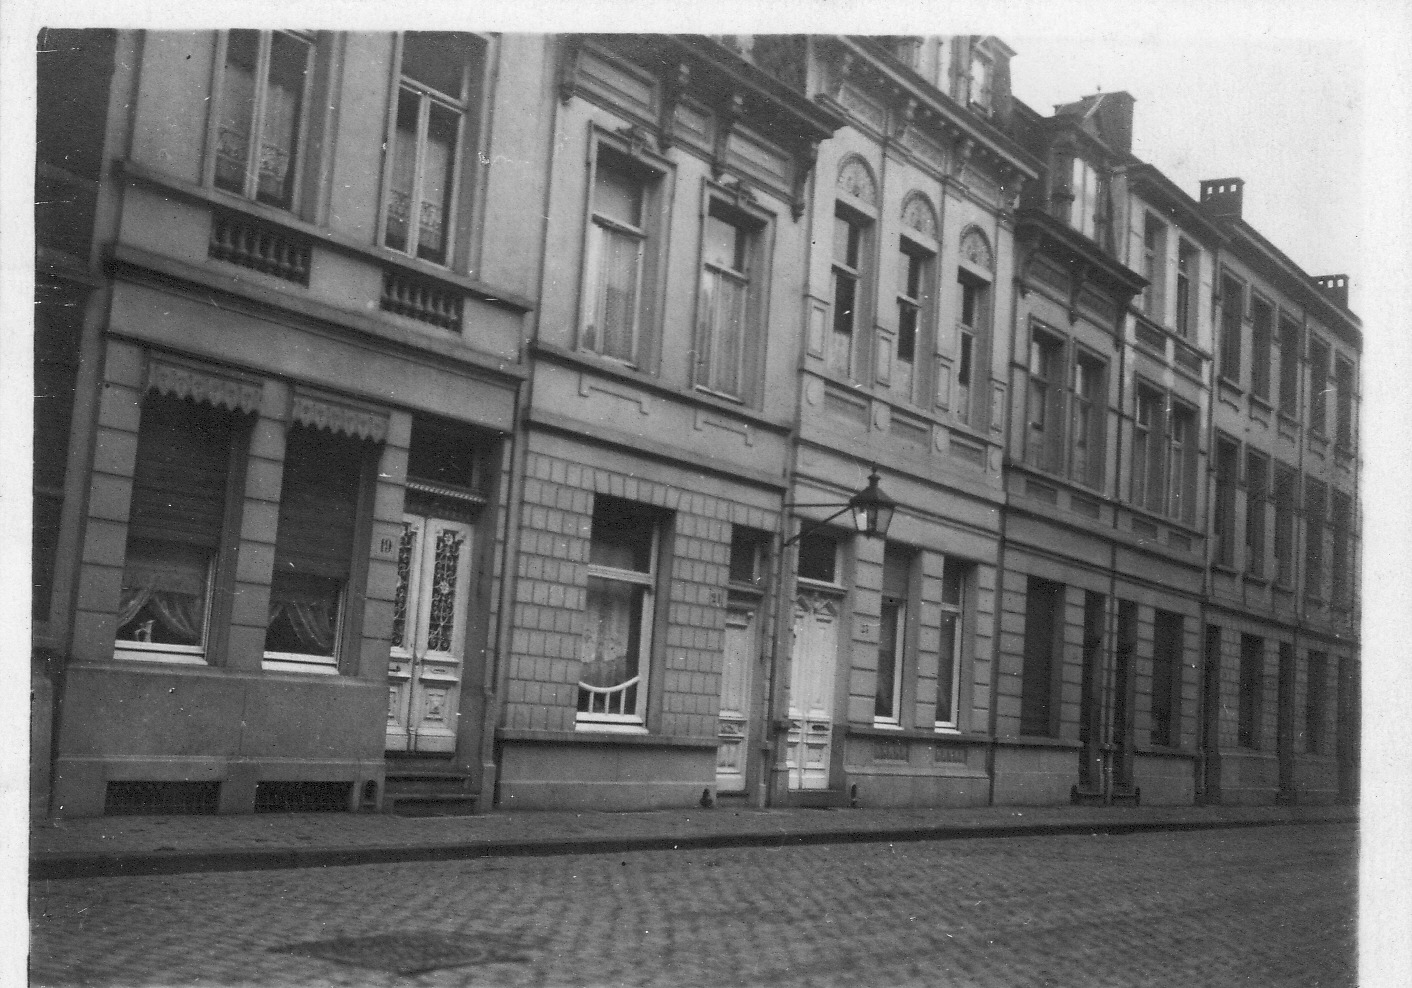 Zeilstraat 21, Antwerpen